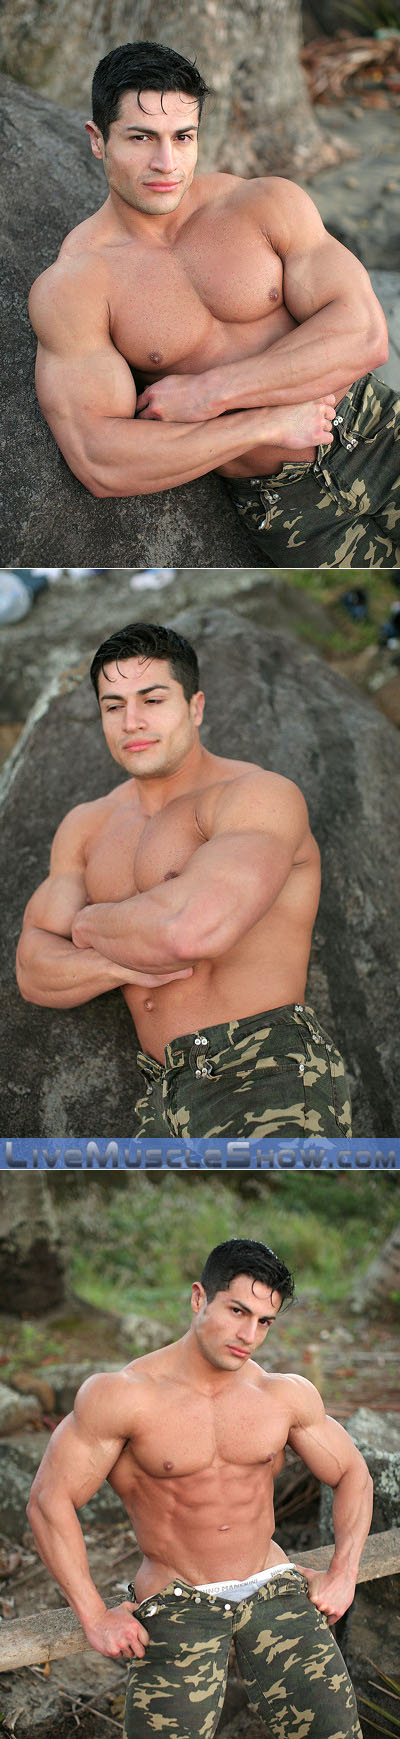 Huge Latin bodybuilder